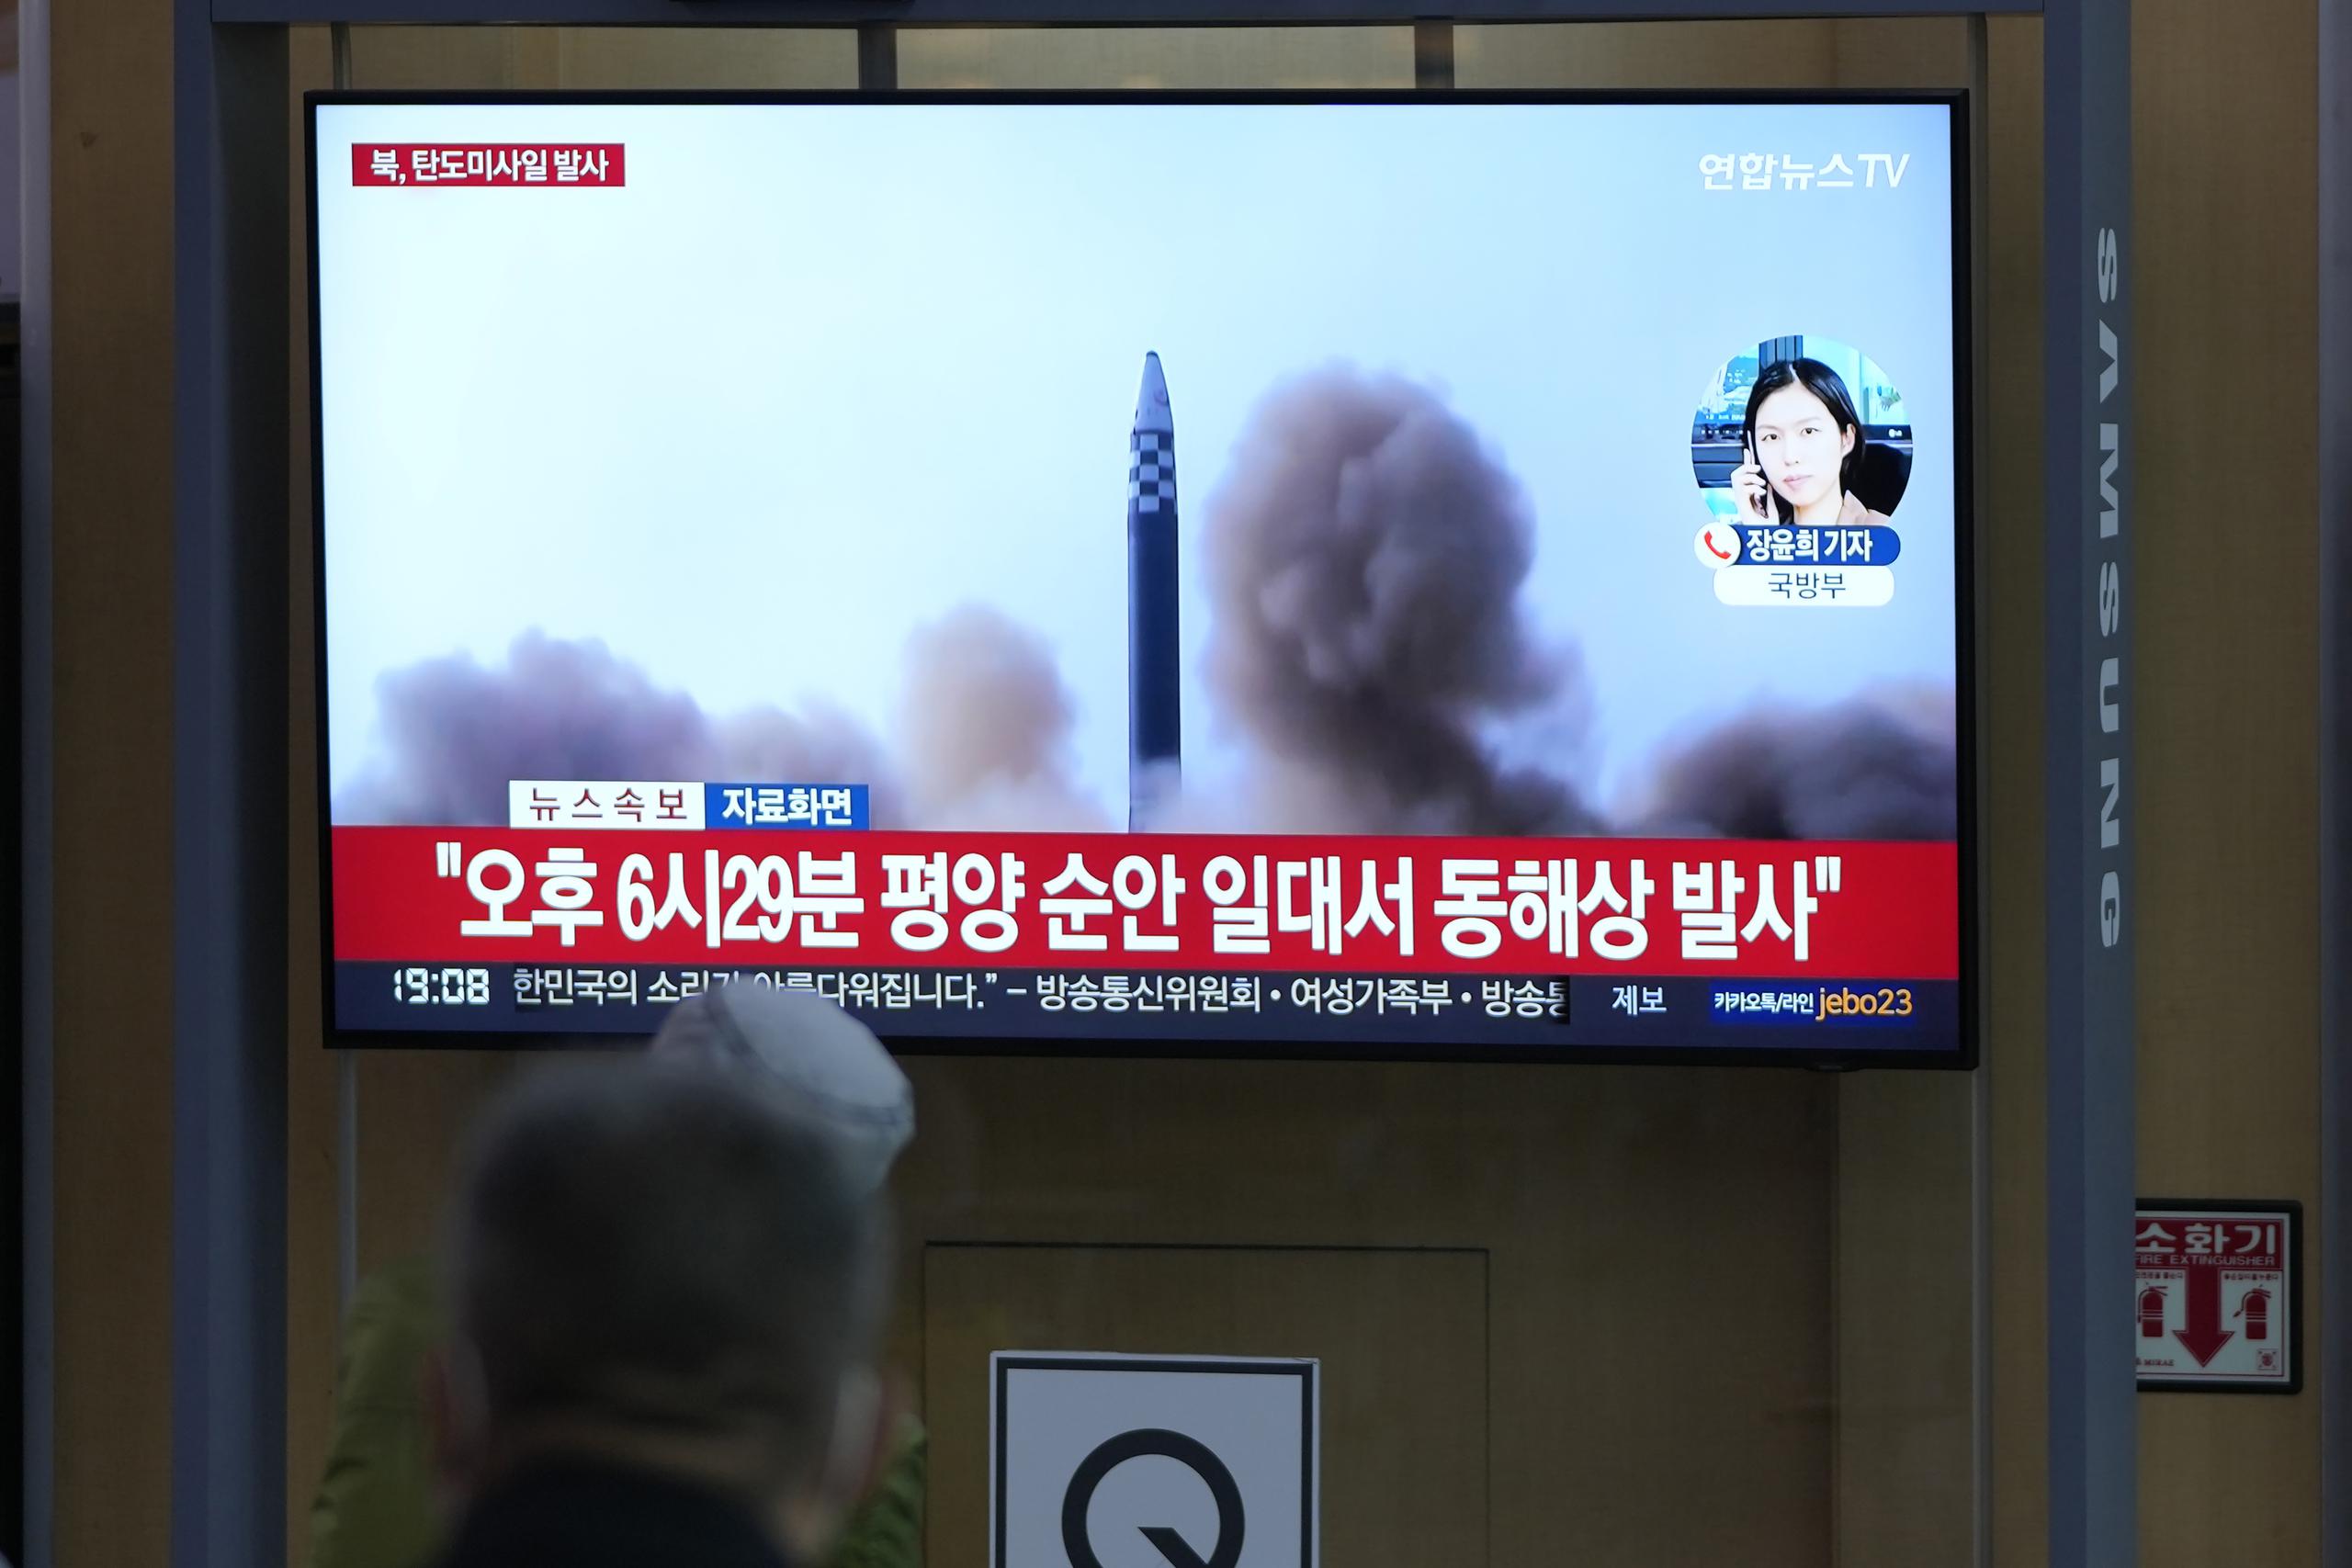 El Ministerio de Defensa de Japón confirmó el primer lanzamiento anunciado por Seúl, pero no ofreció más detalles.